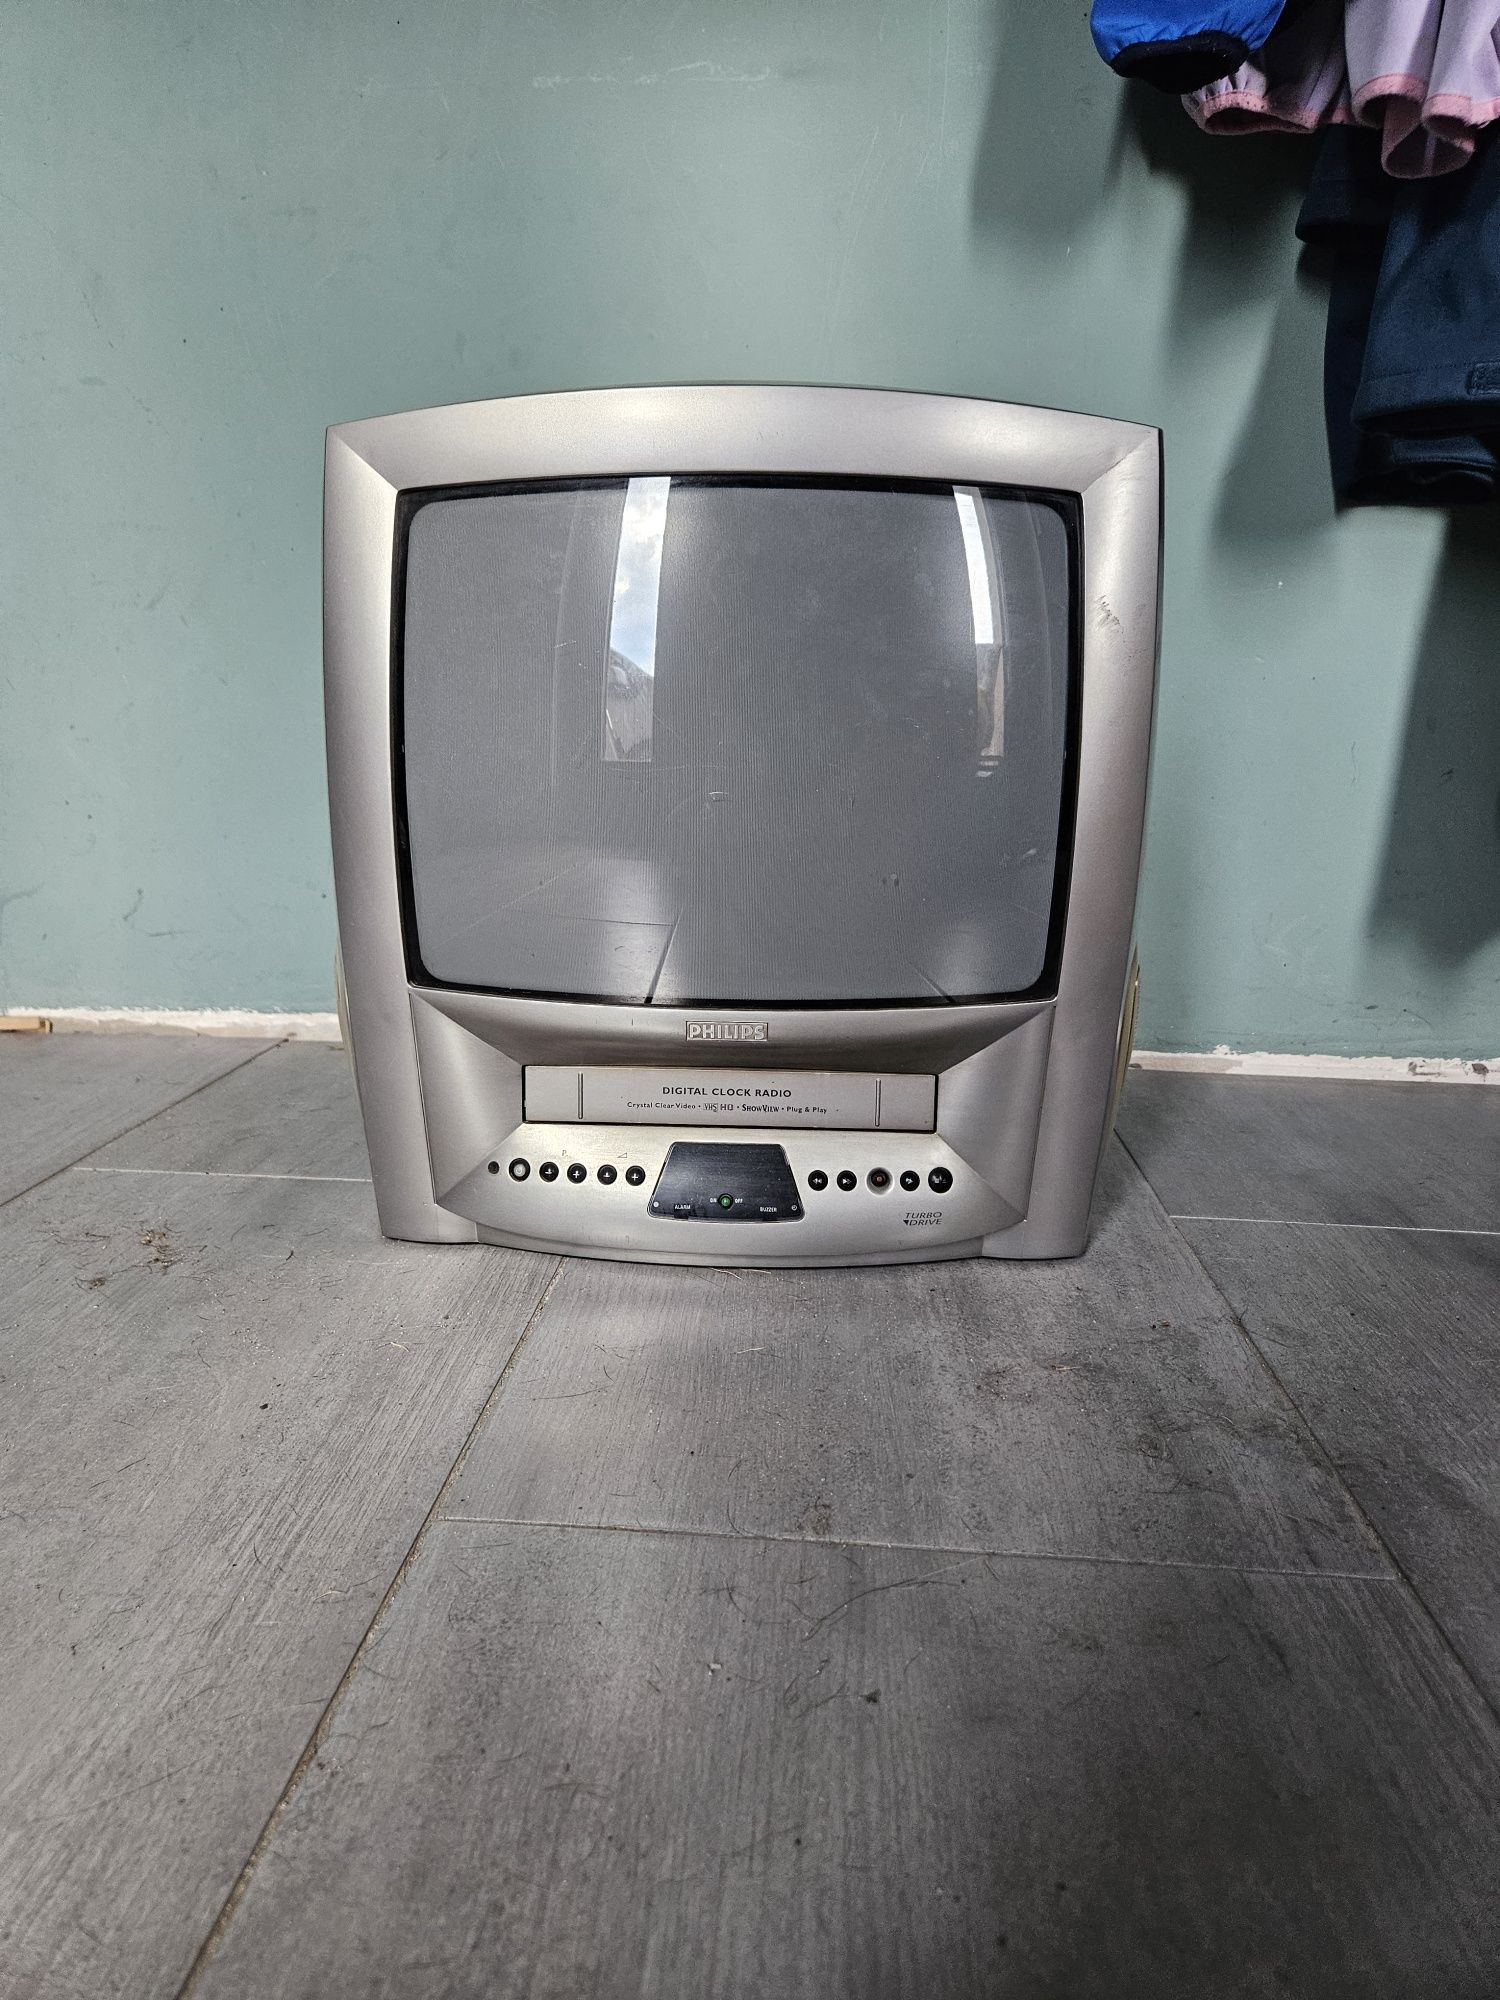 Telewizor Philips z VHS 14 cali bez dekodera dvbt